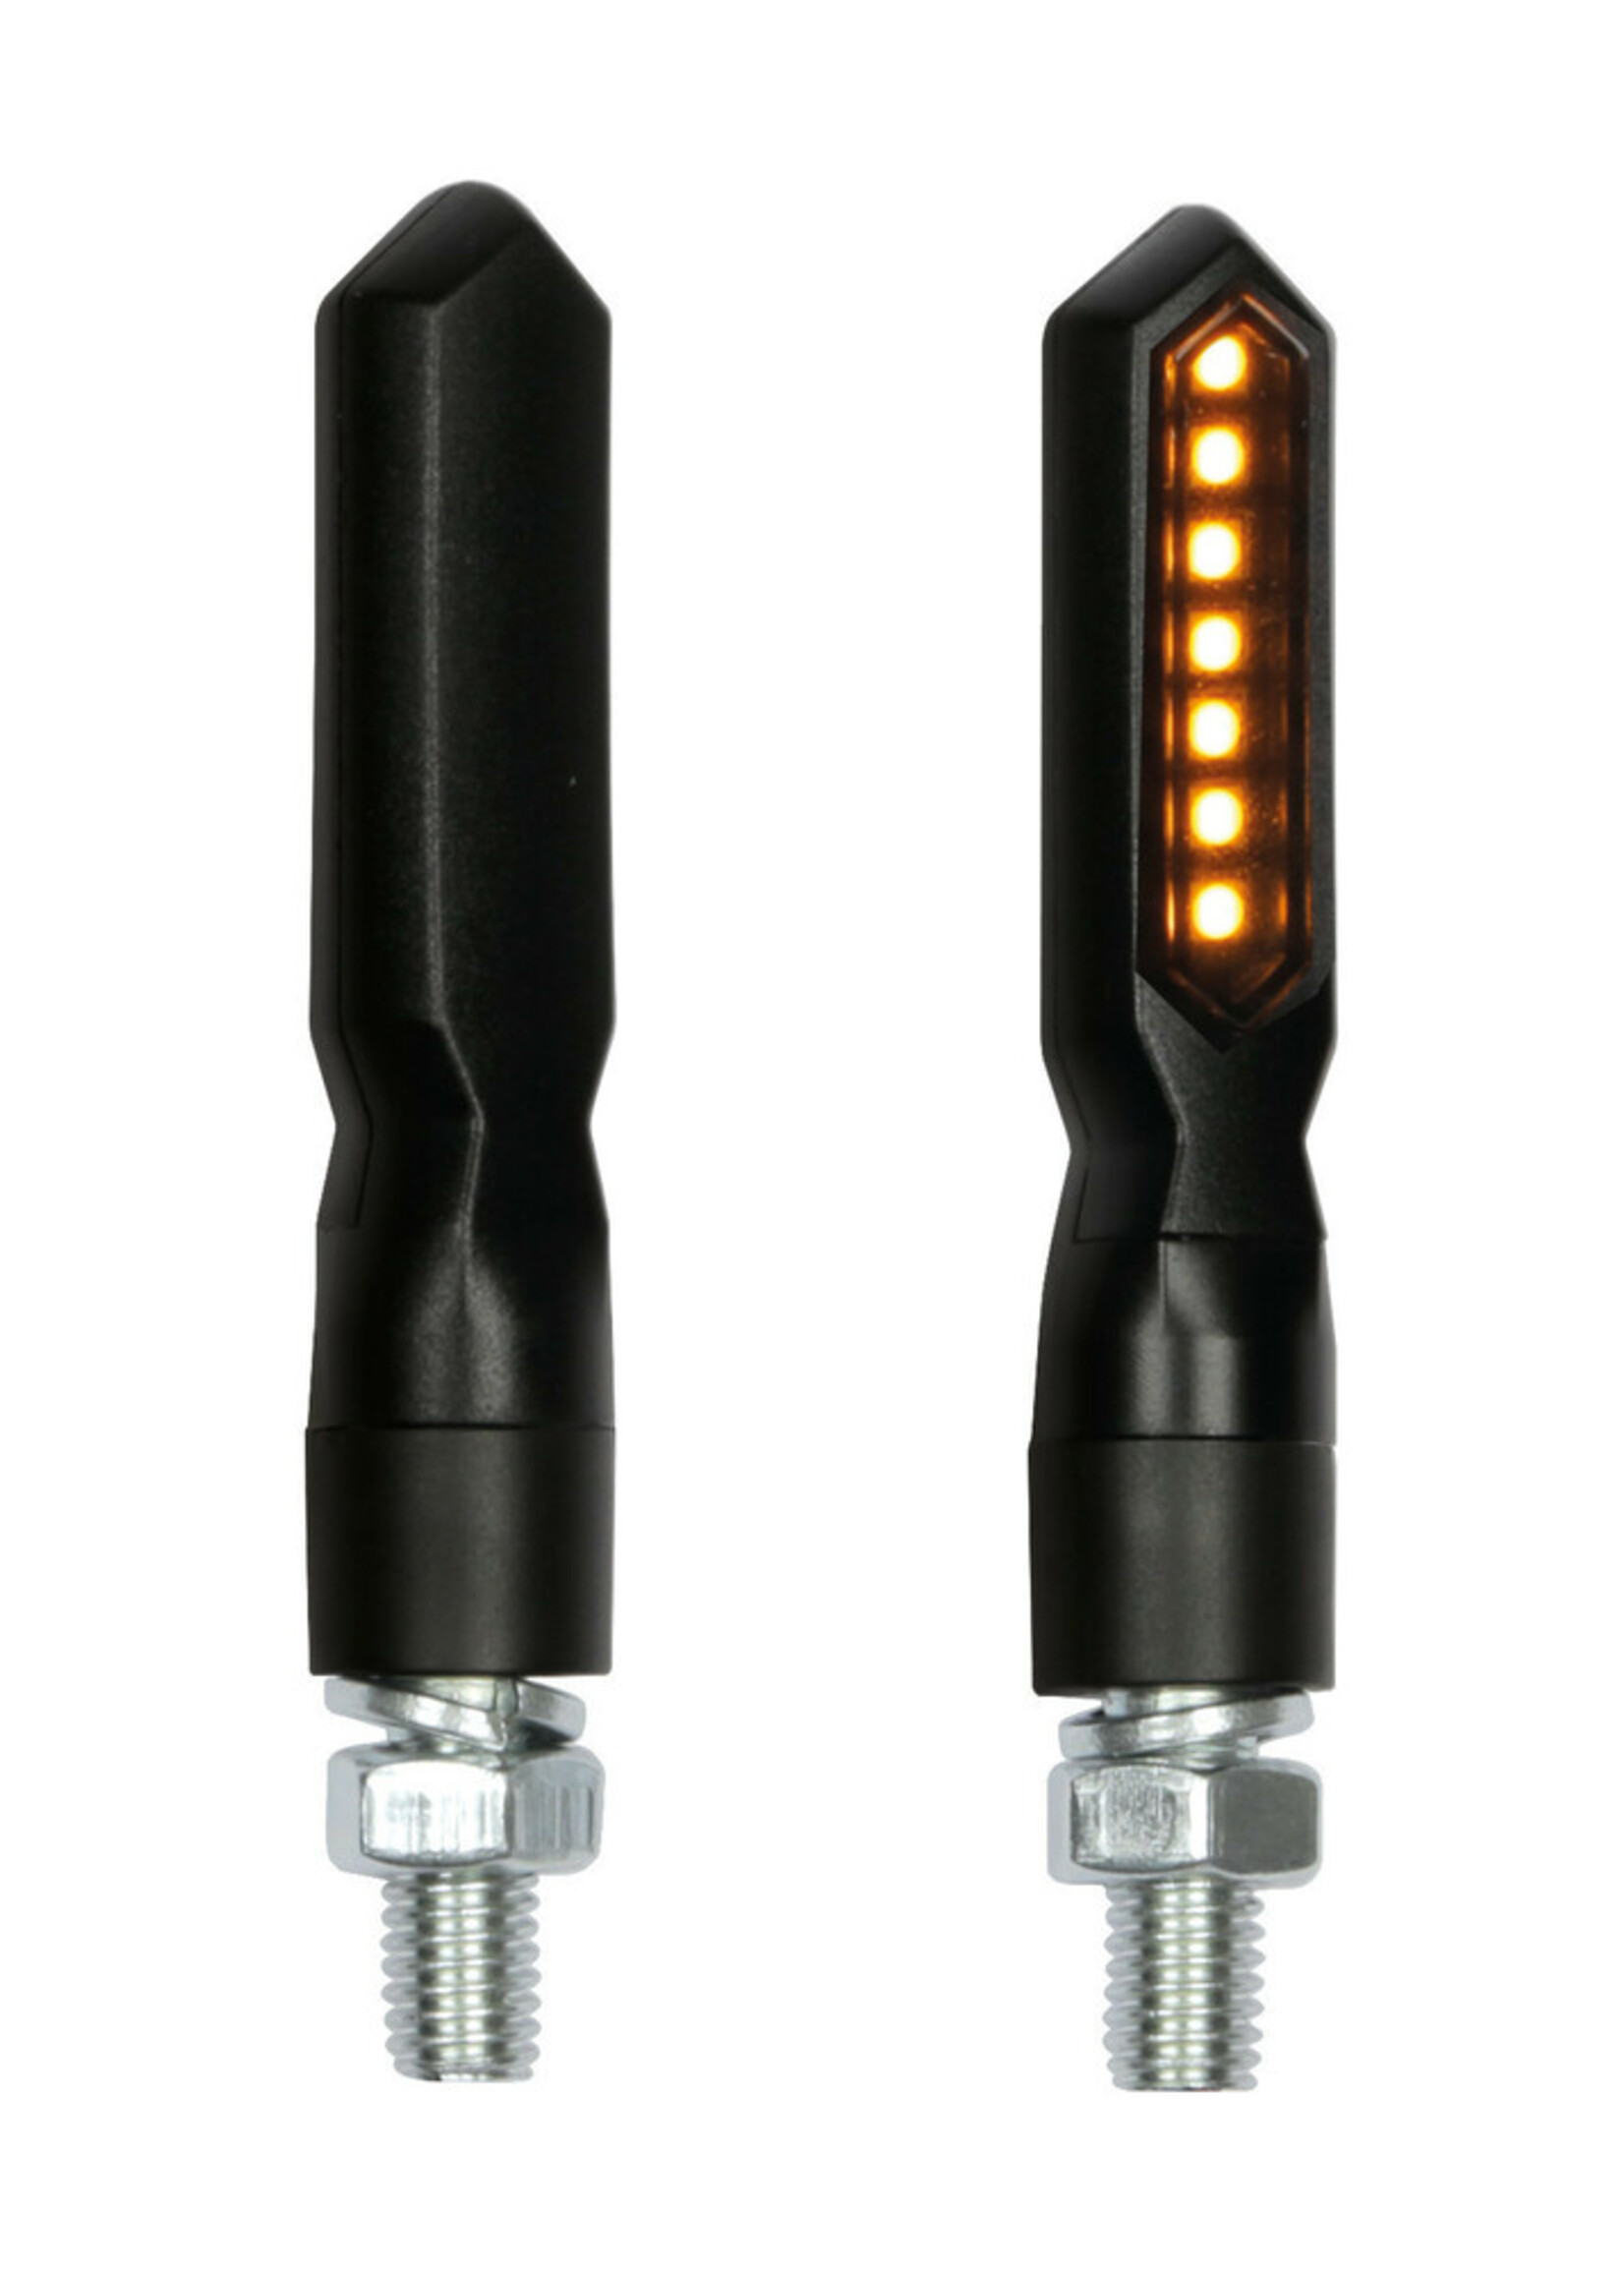 Lampa Piercer SQ, sequential led corner lights - 12V LED